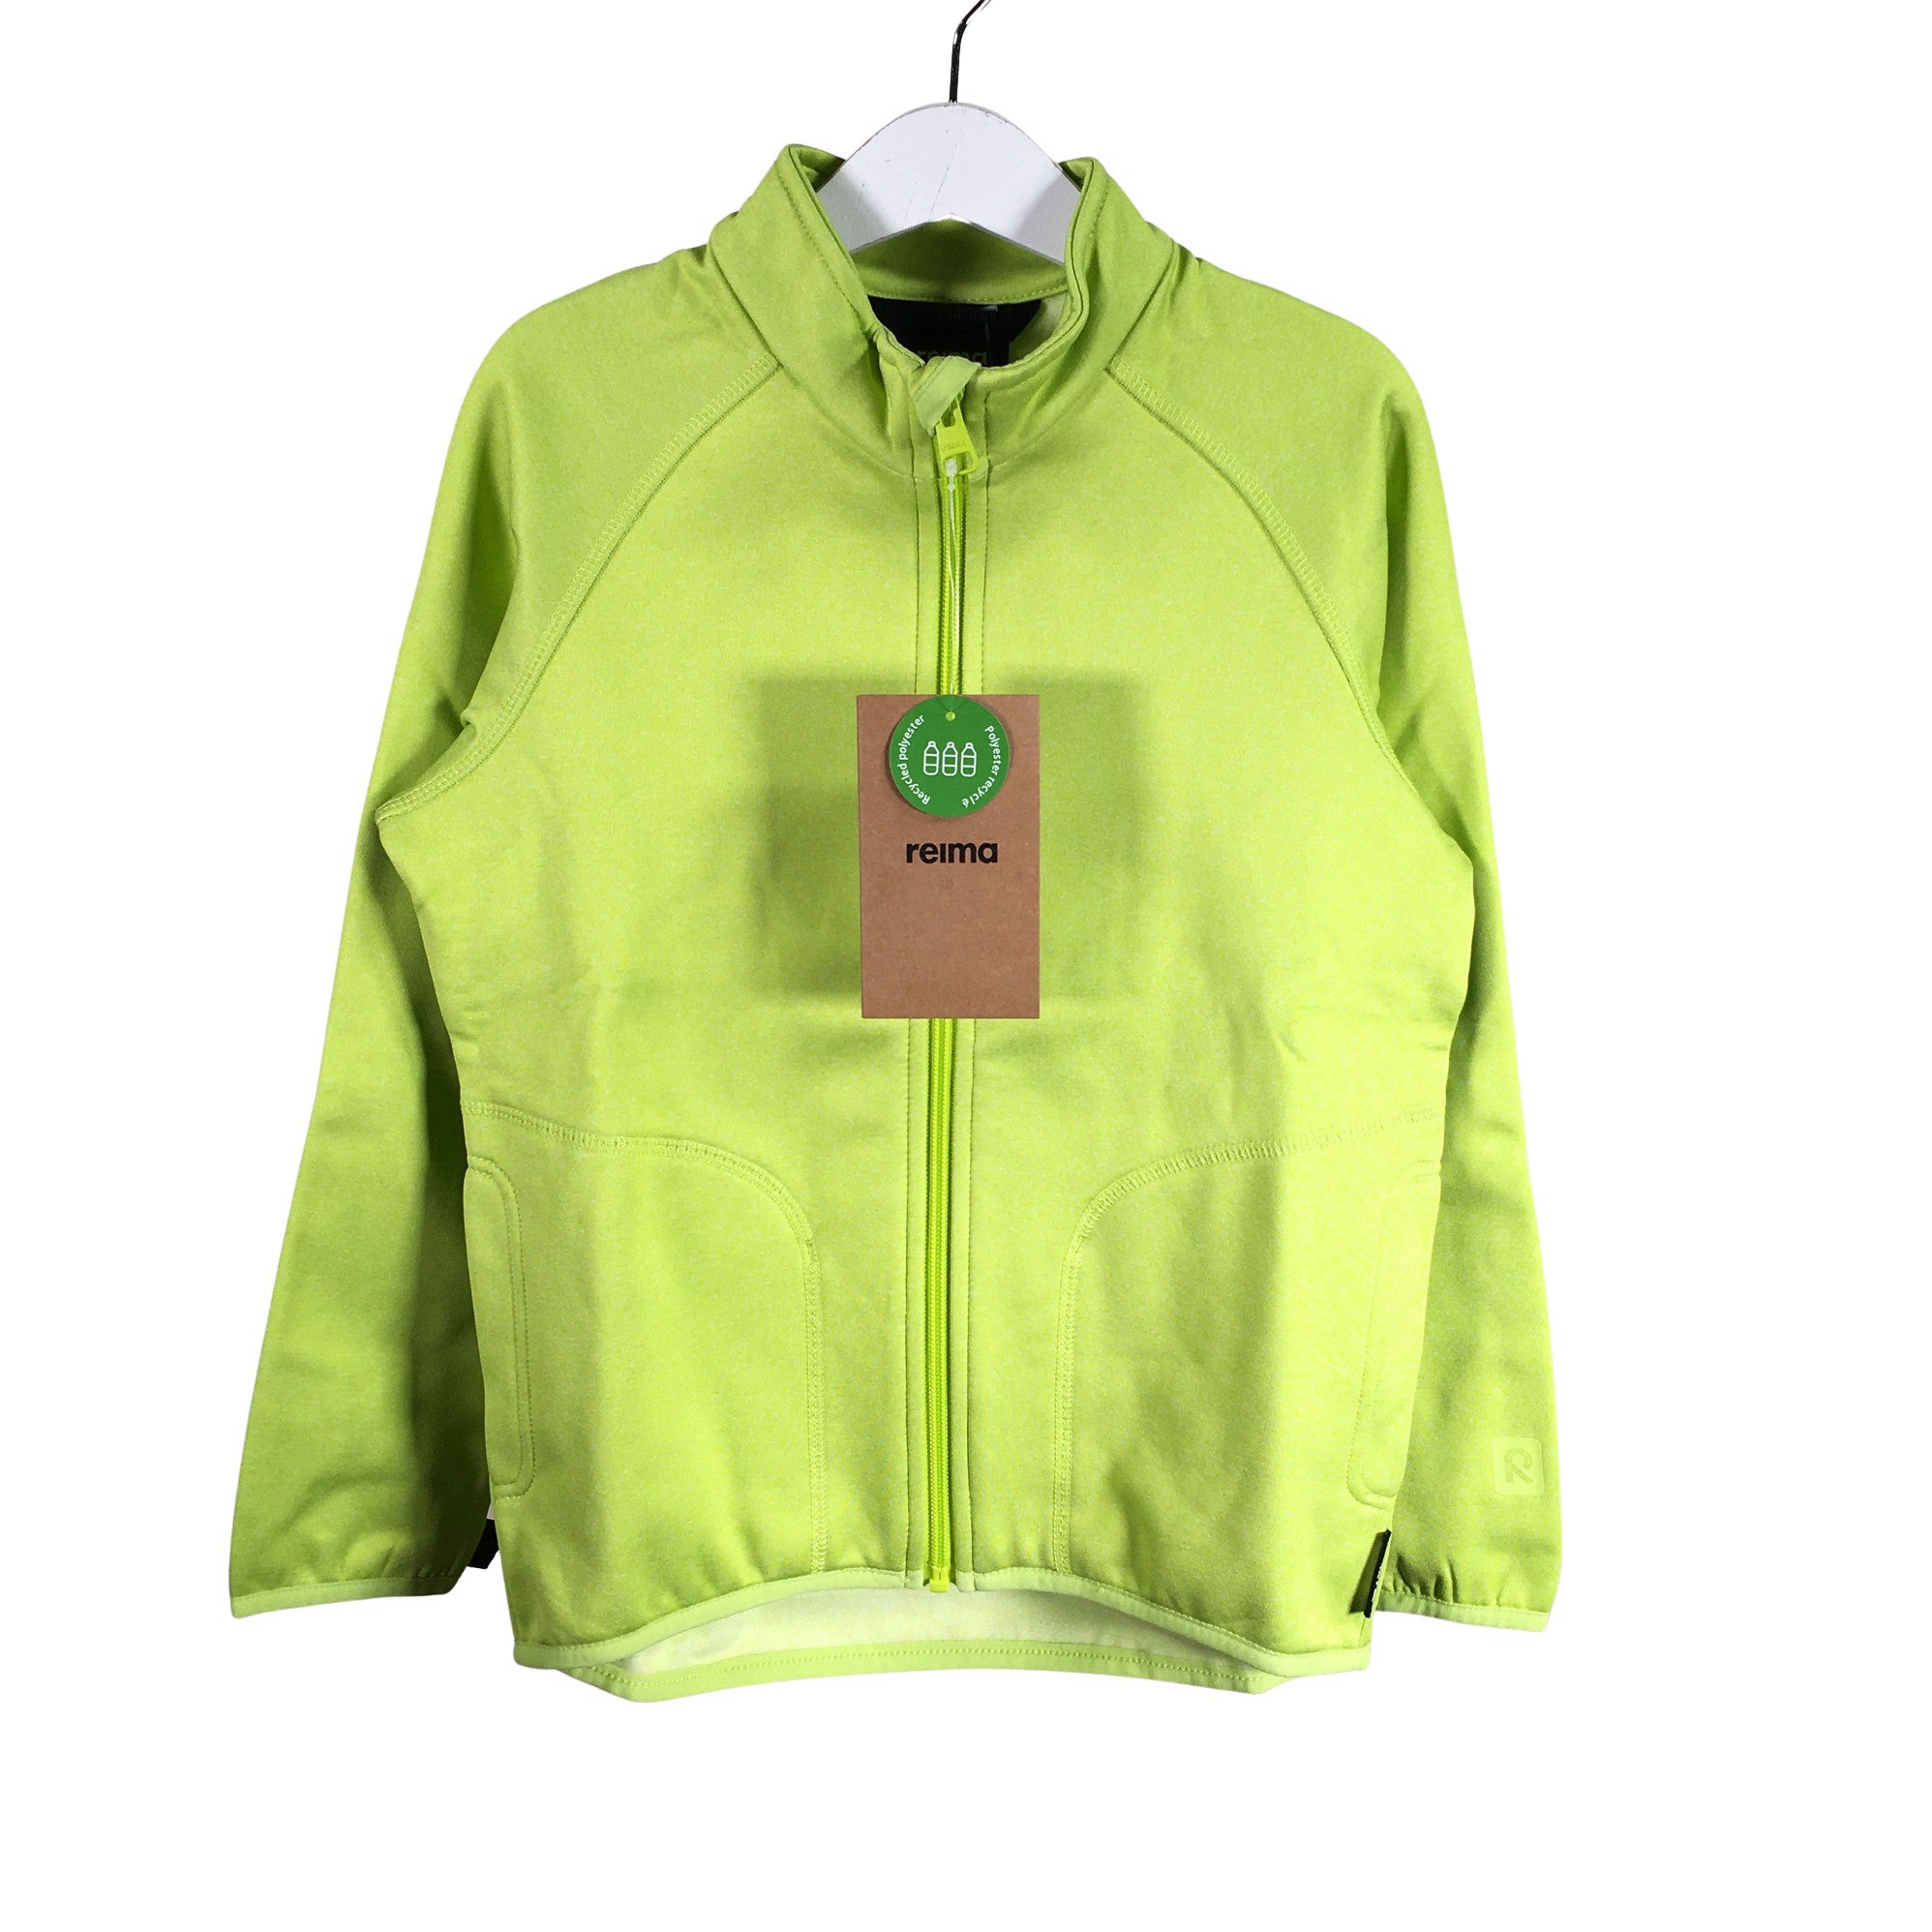 Doodt maïs beeld Boys' Reima Fleece jacket, size 122 - 128 (Green) | Emmy